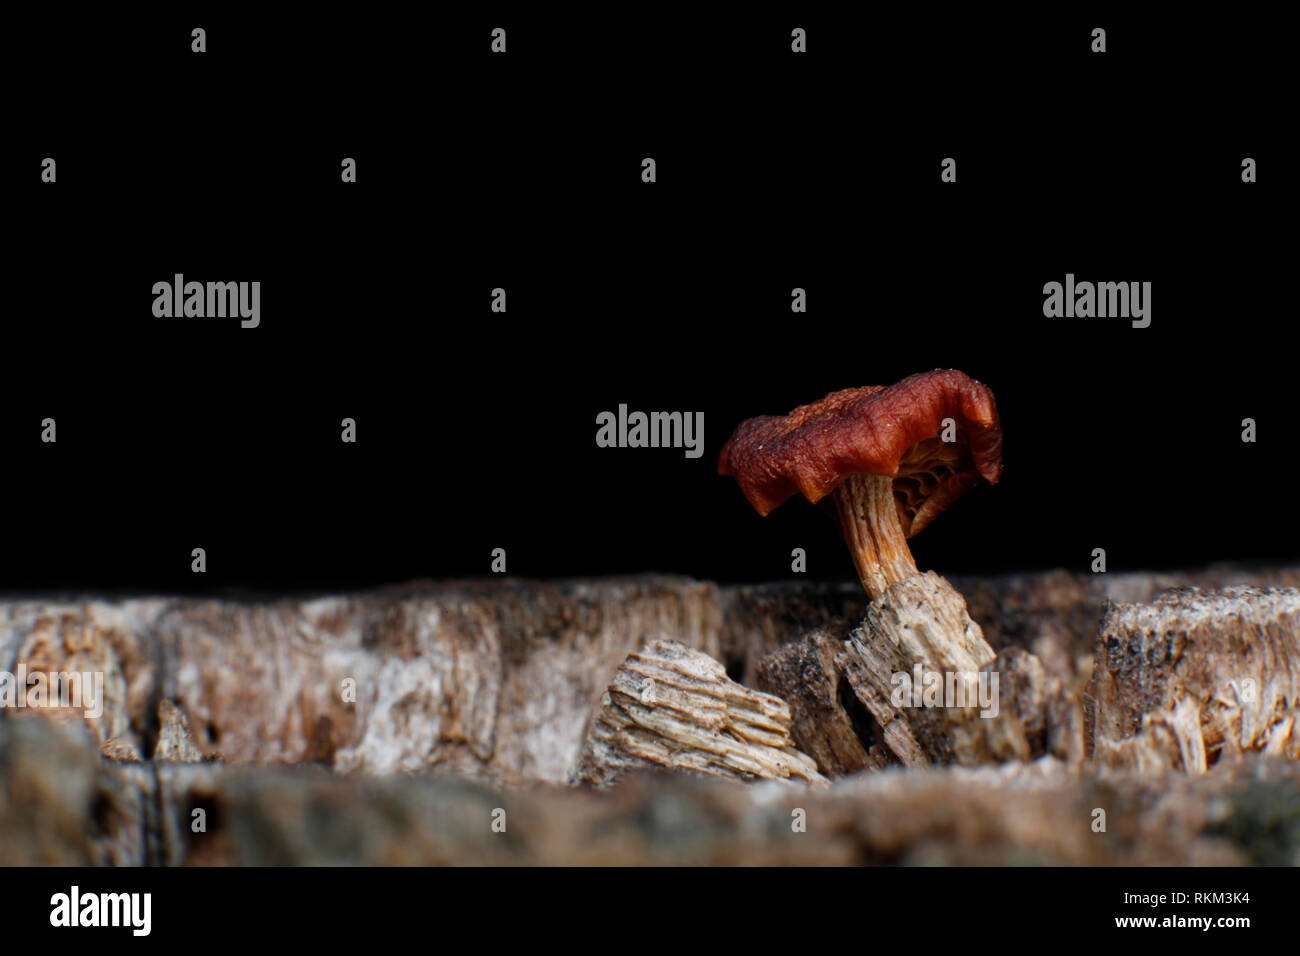 Piccolo fungo che nasce sul tronco di un albero di taglio, permettendo così la rinascita di una nuova vita dopo la morte dell'albero. Foto Stock